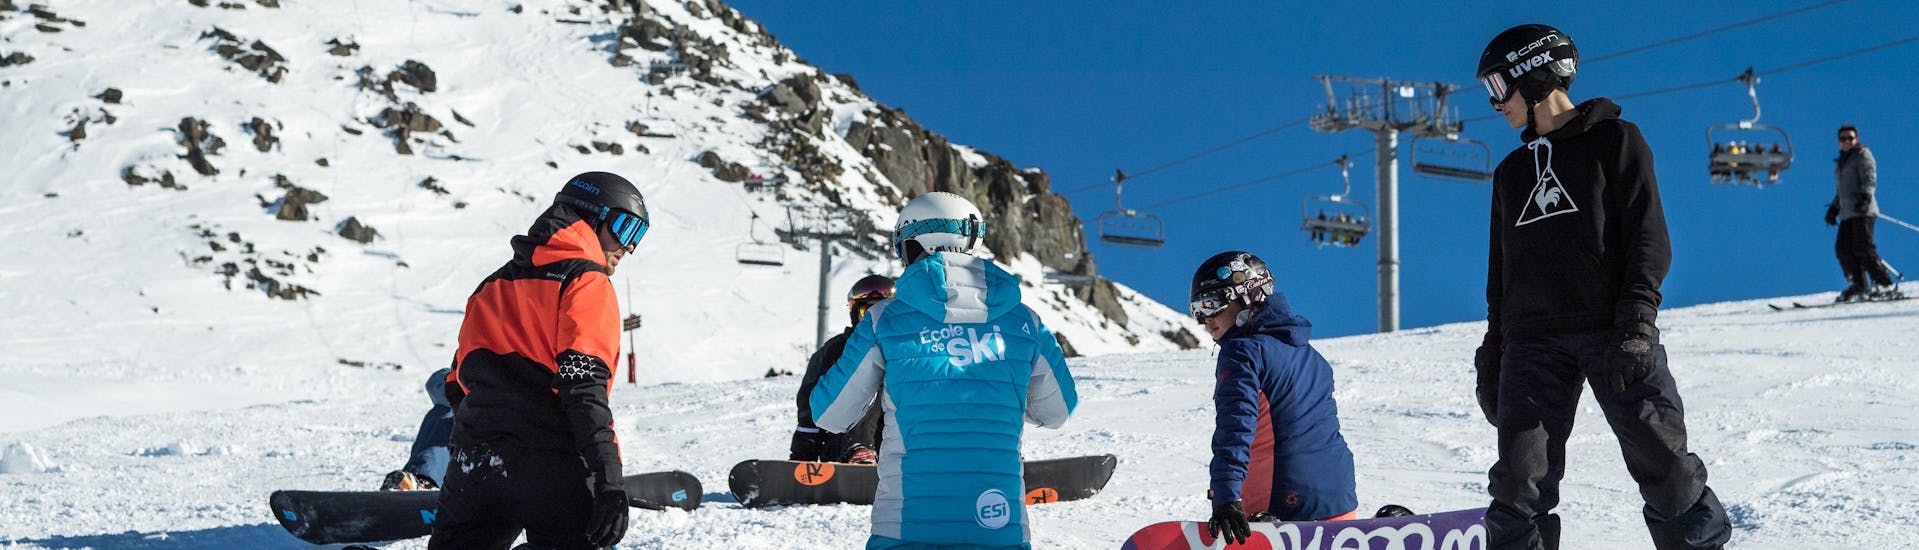 Lezioni di Snowboard a partire da 9 anni principianti assoluti.